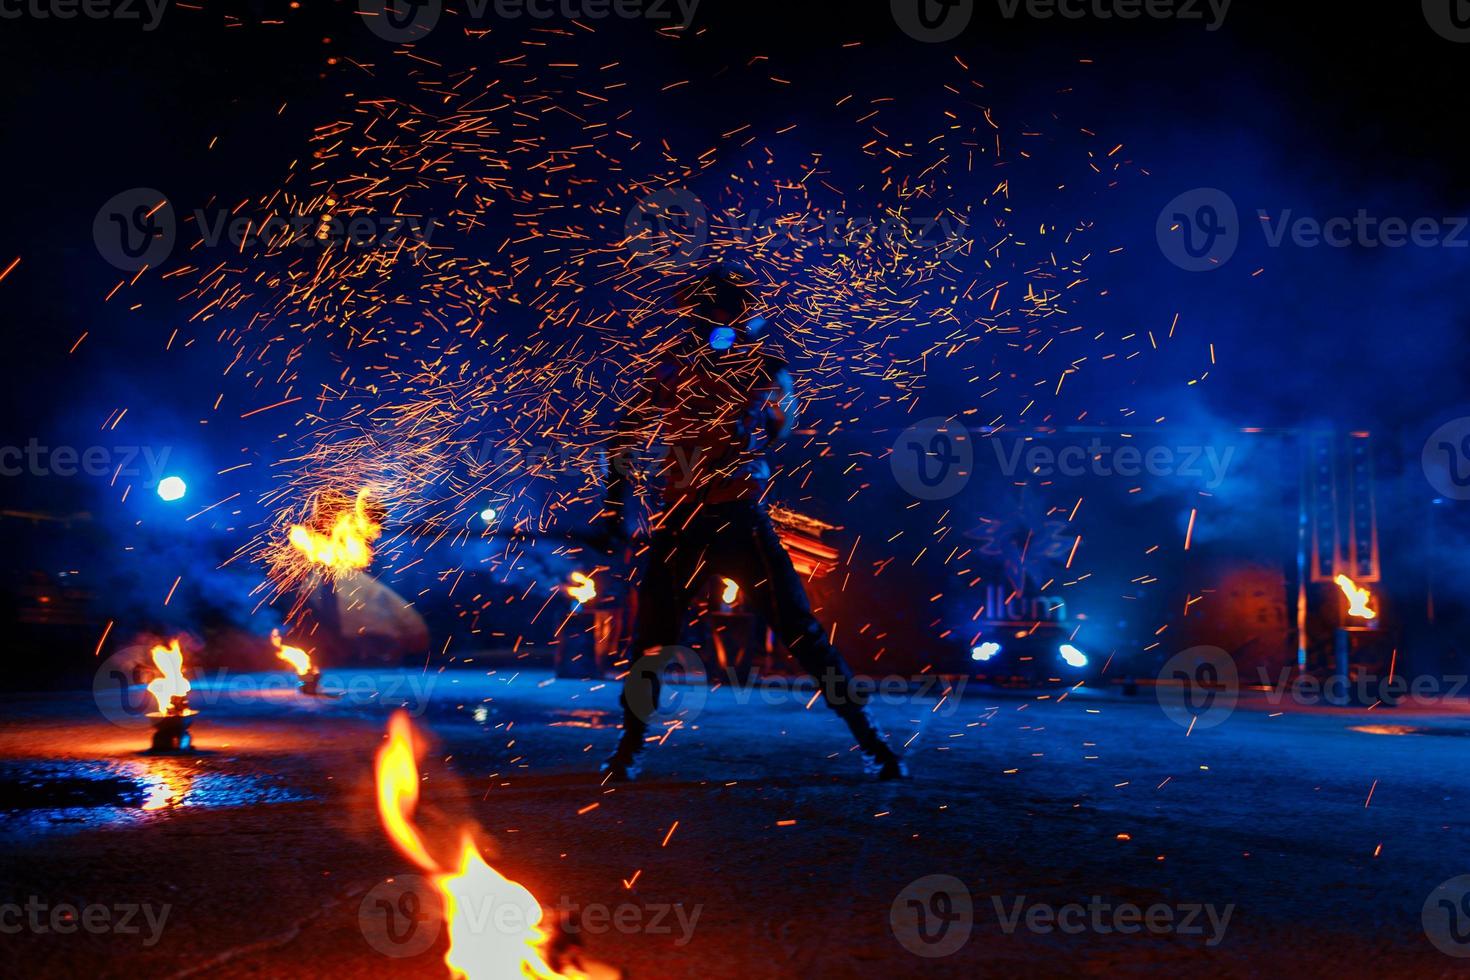 show de fogo, dançando com chamas, mestre masculino fazendo malabarismo com fogos de artifício, performance ao ar livre, desenha uma figura de fogo no escuro, faíscas brilhantes à noite. um homem de terno conduzia danças com fogo foto